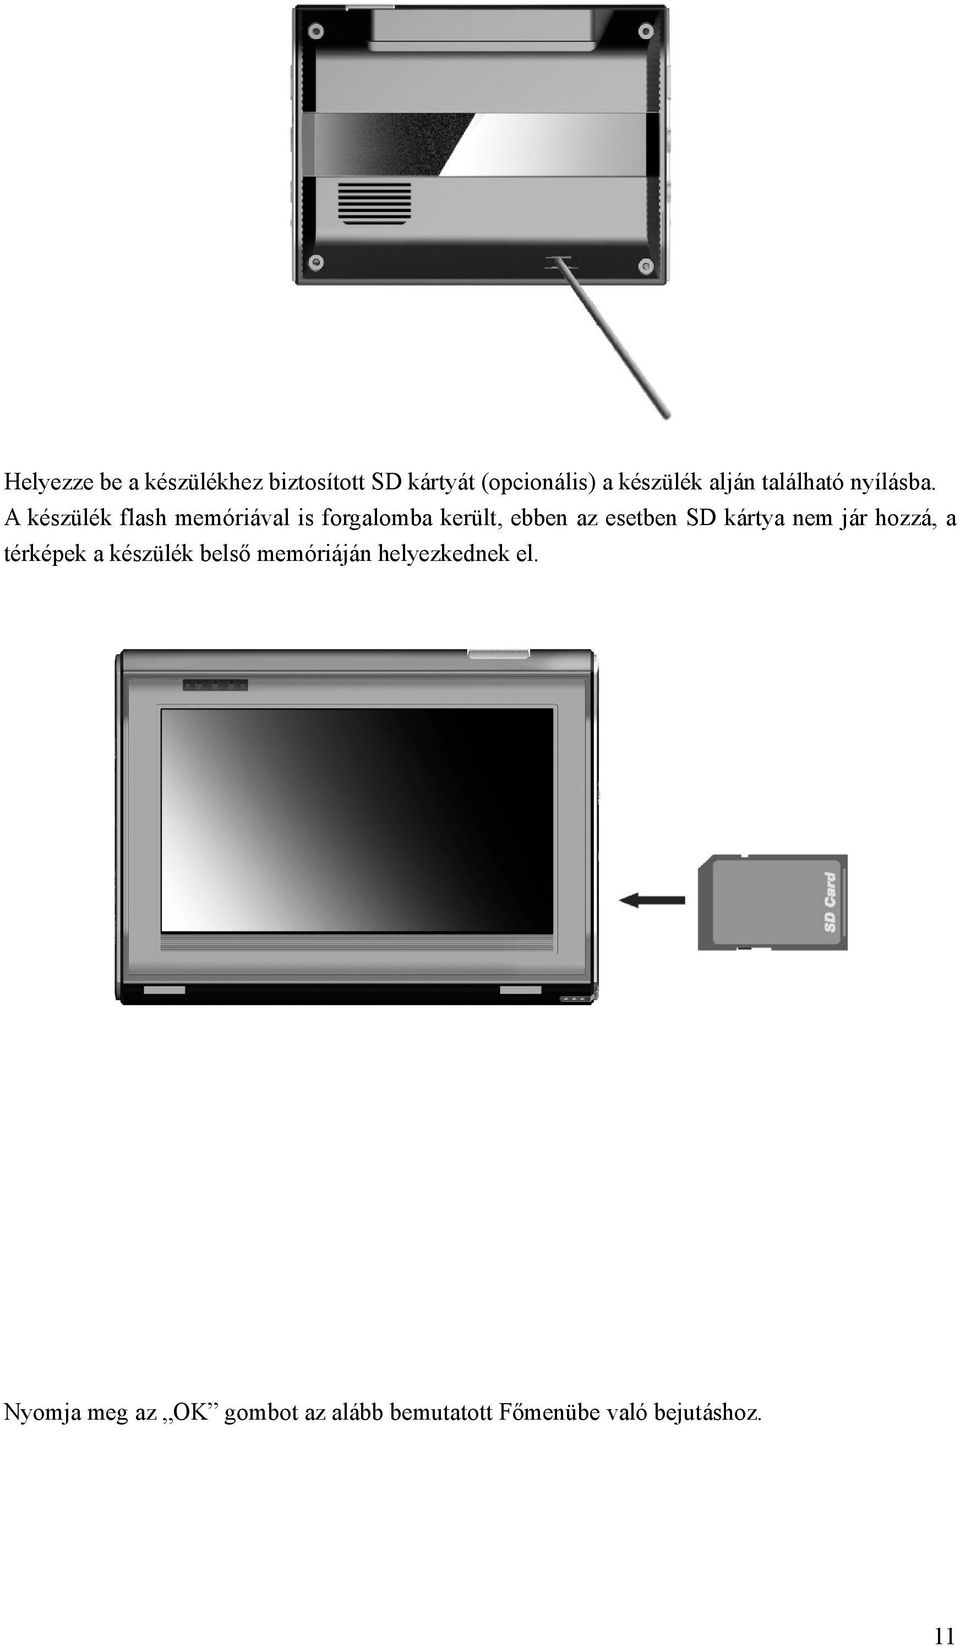 A készülék flash memóriával is forgalomba került, ebben az esetben SD kártya